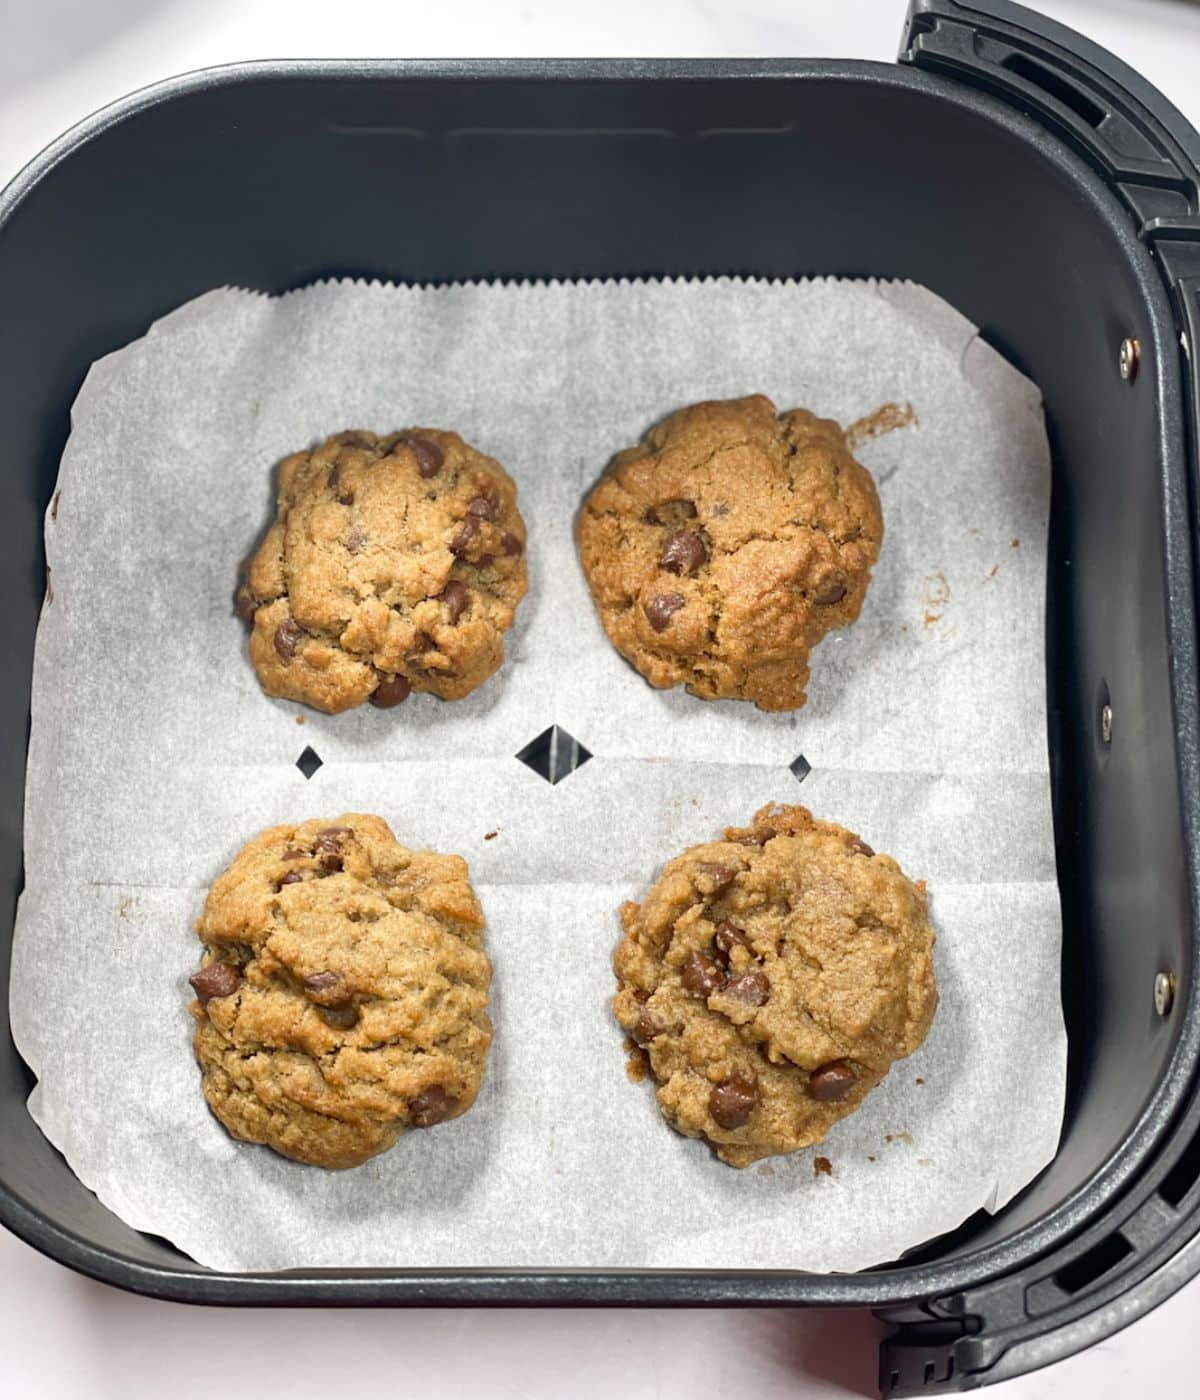 Air fryer basket is with vegan chocolate chip cookies.